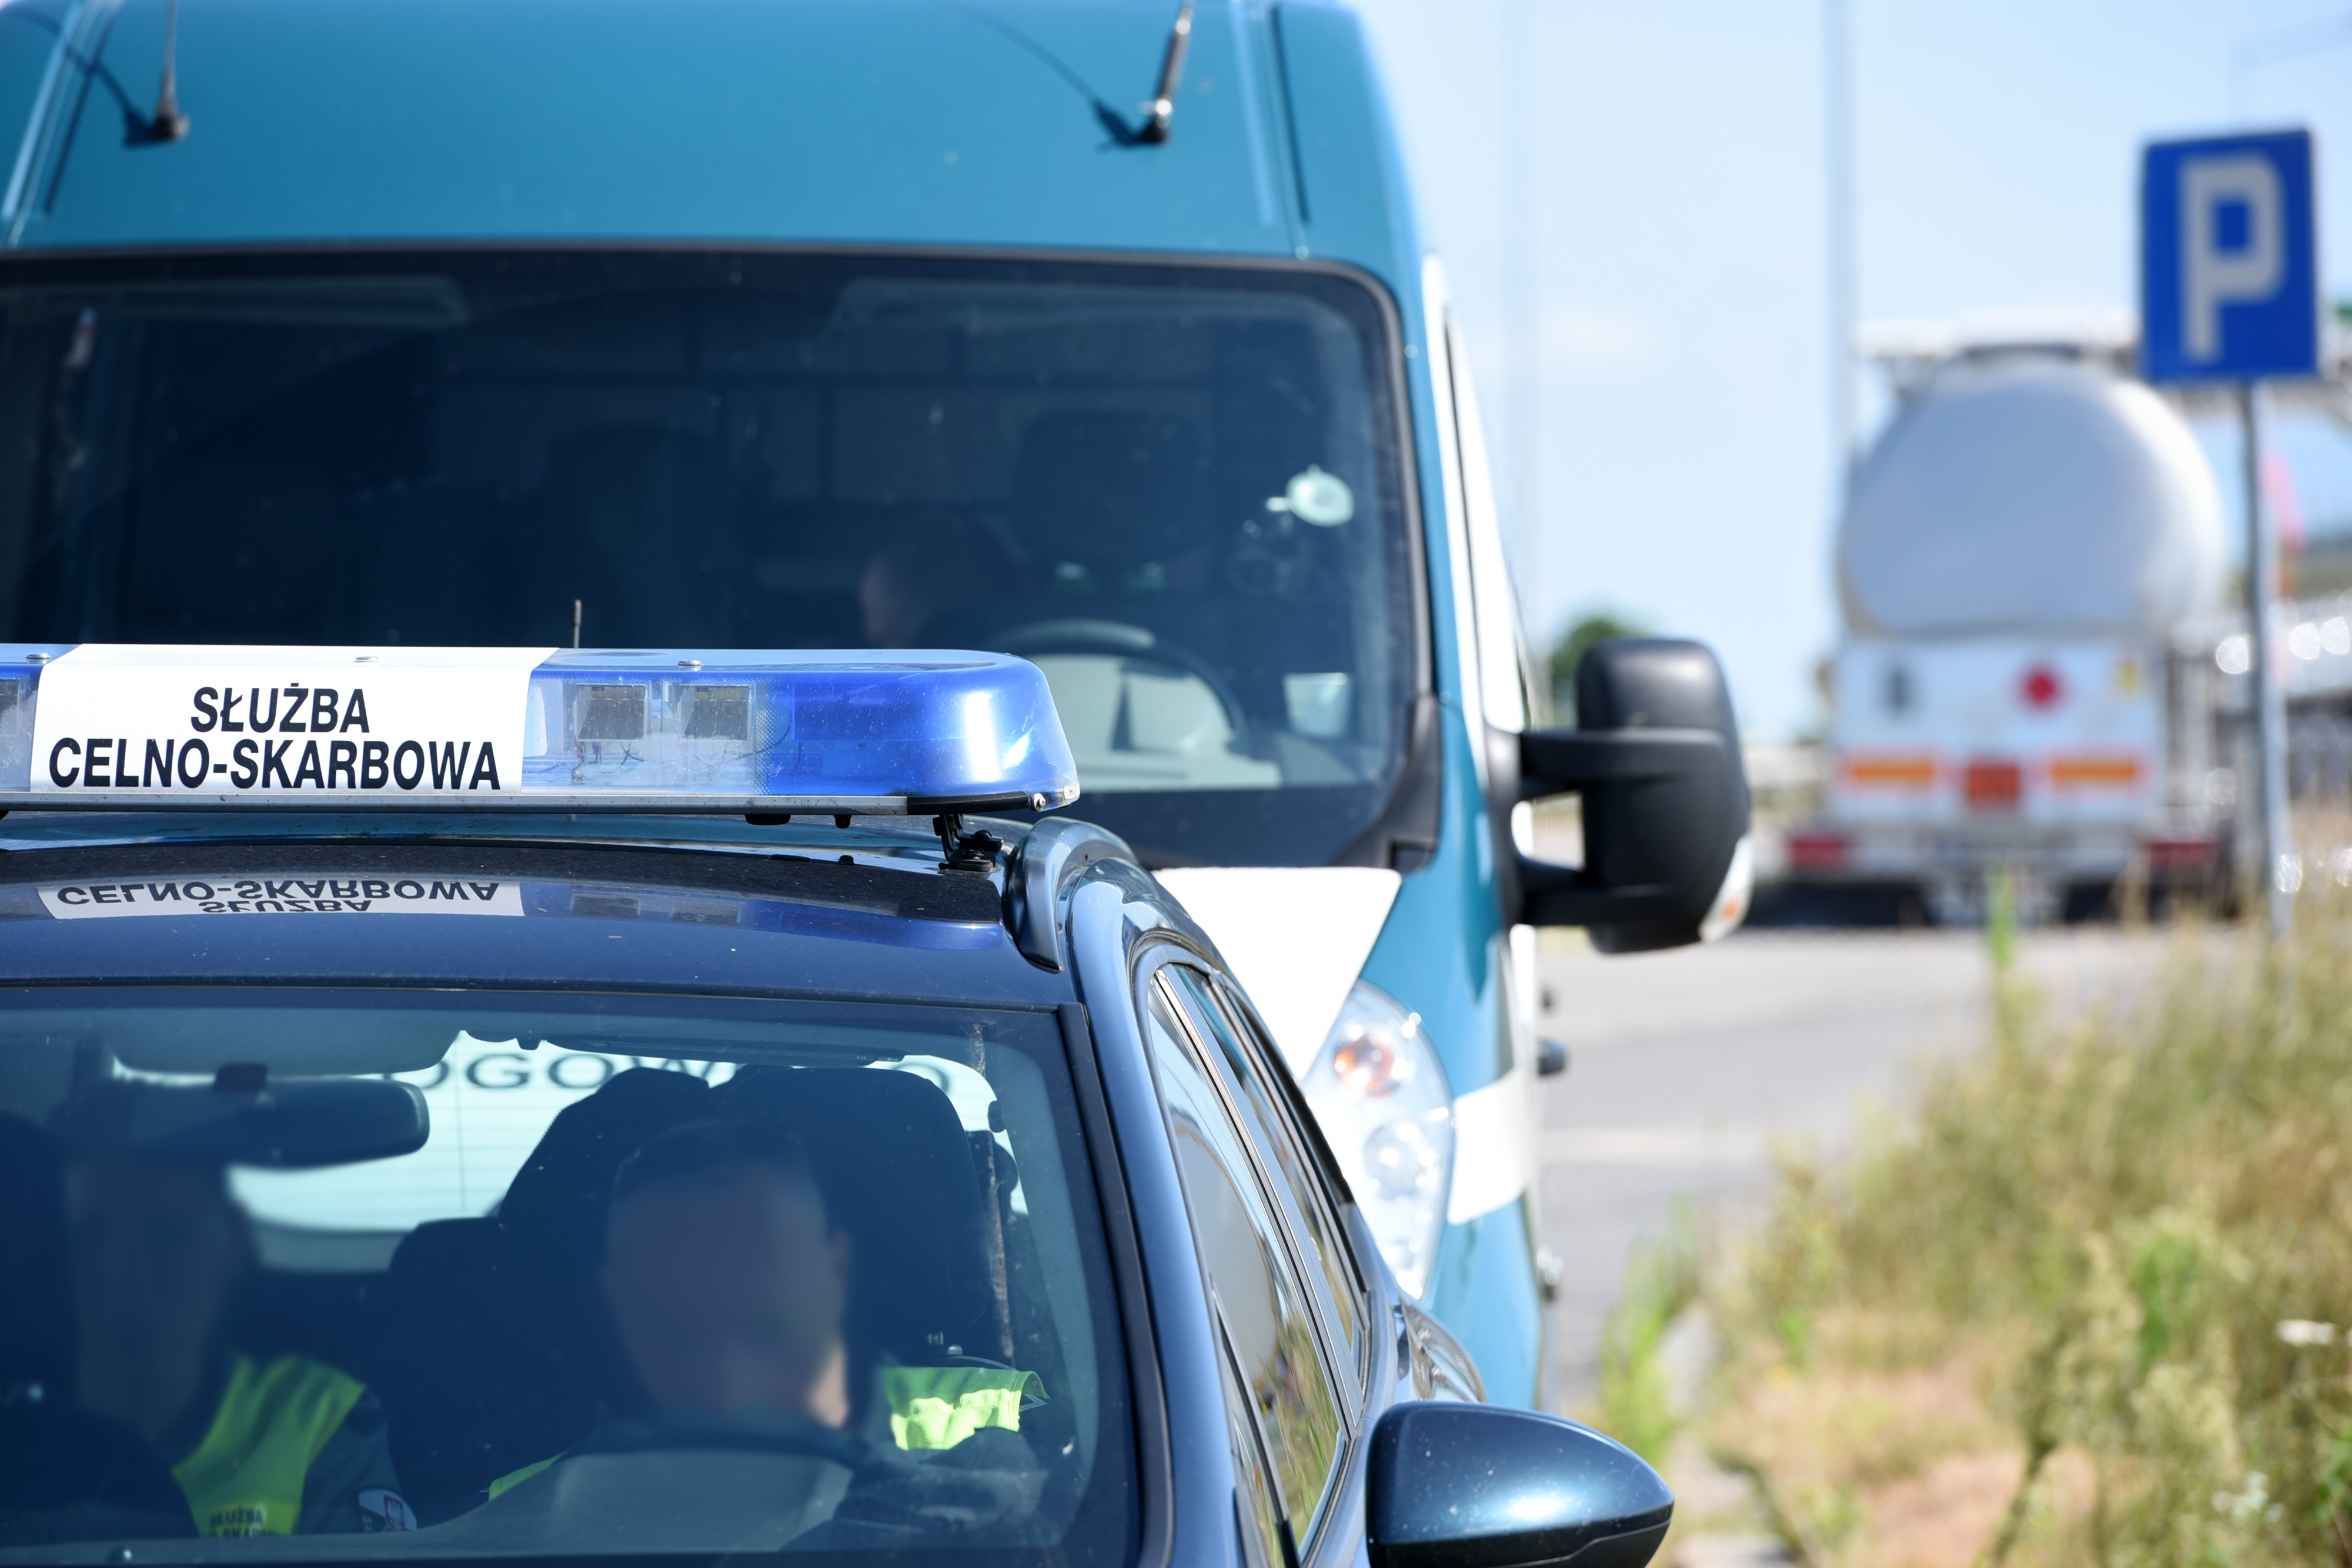 Radiowóz osobowy z belką na dachu z napisem Służba Celno-Skarbowa, a za nim radiowóz typu bus ITD. W tle kontrolowane ciężarówki.